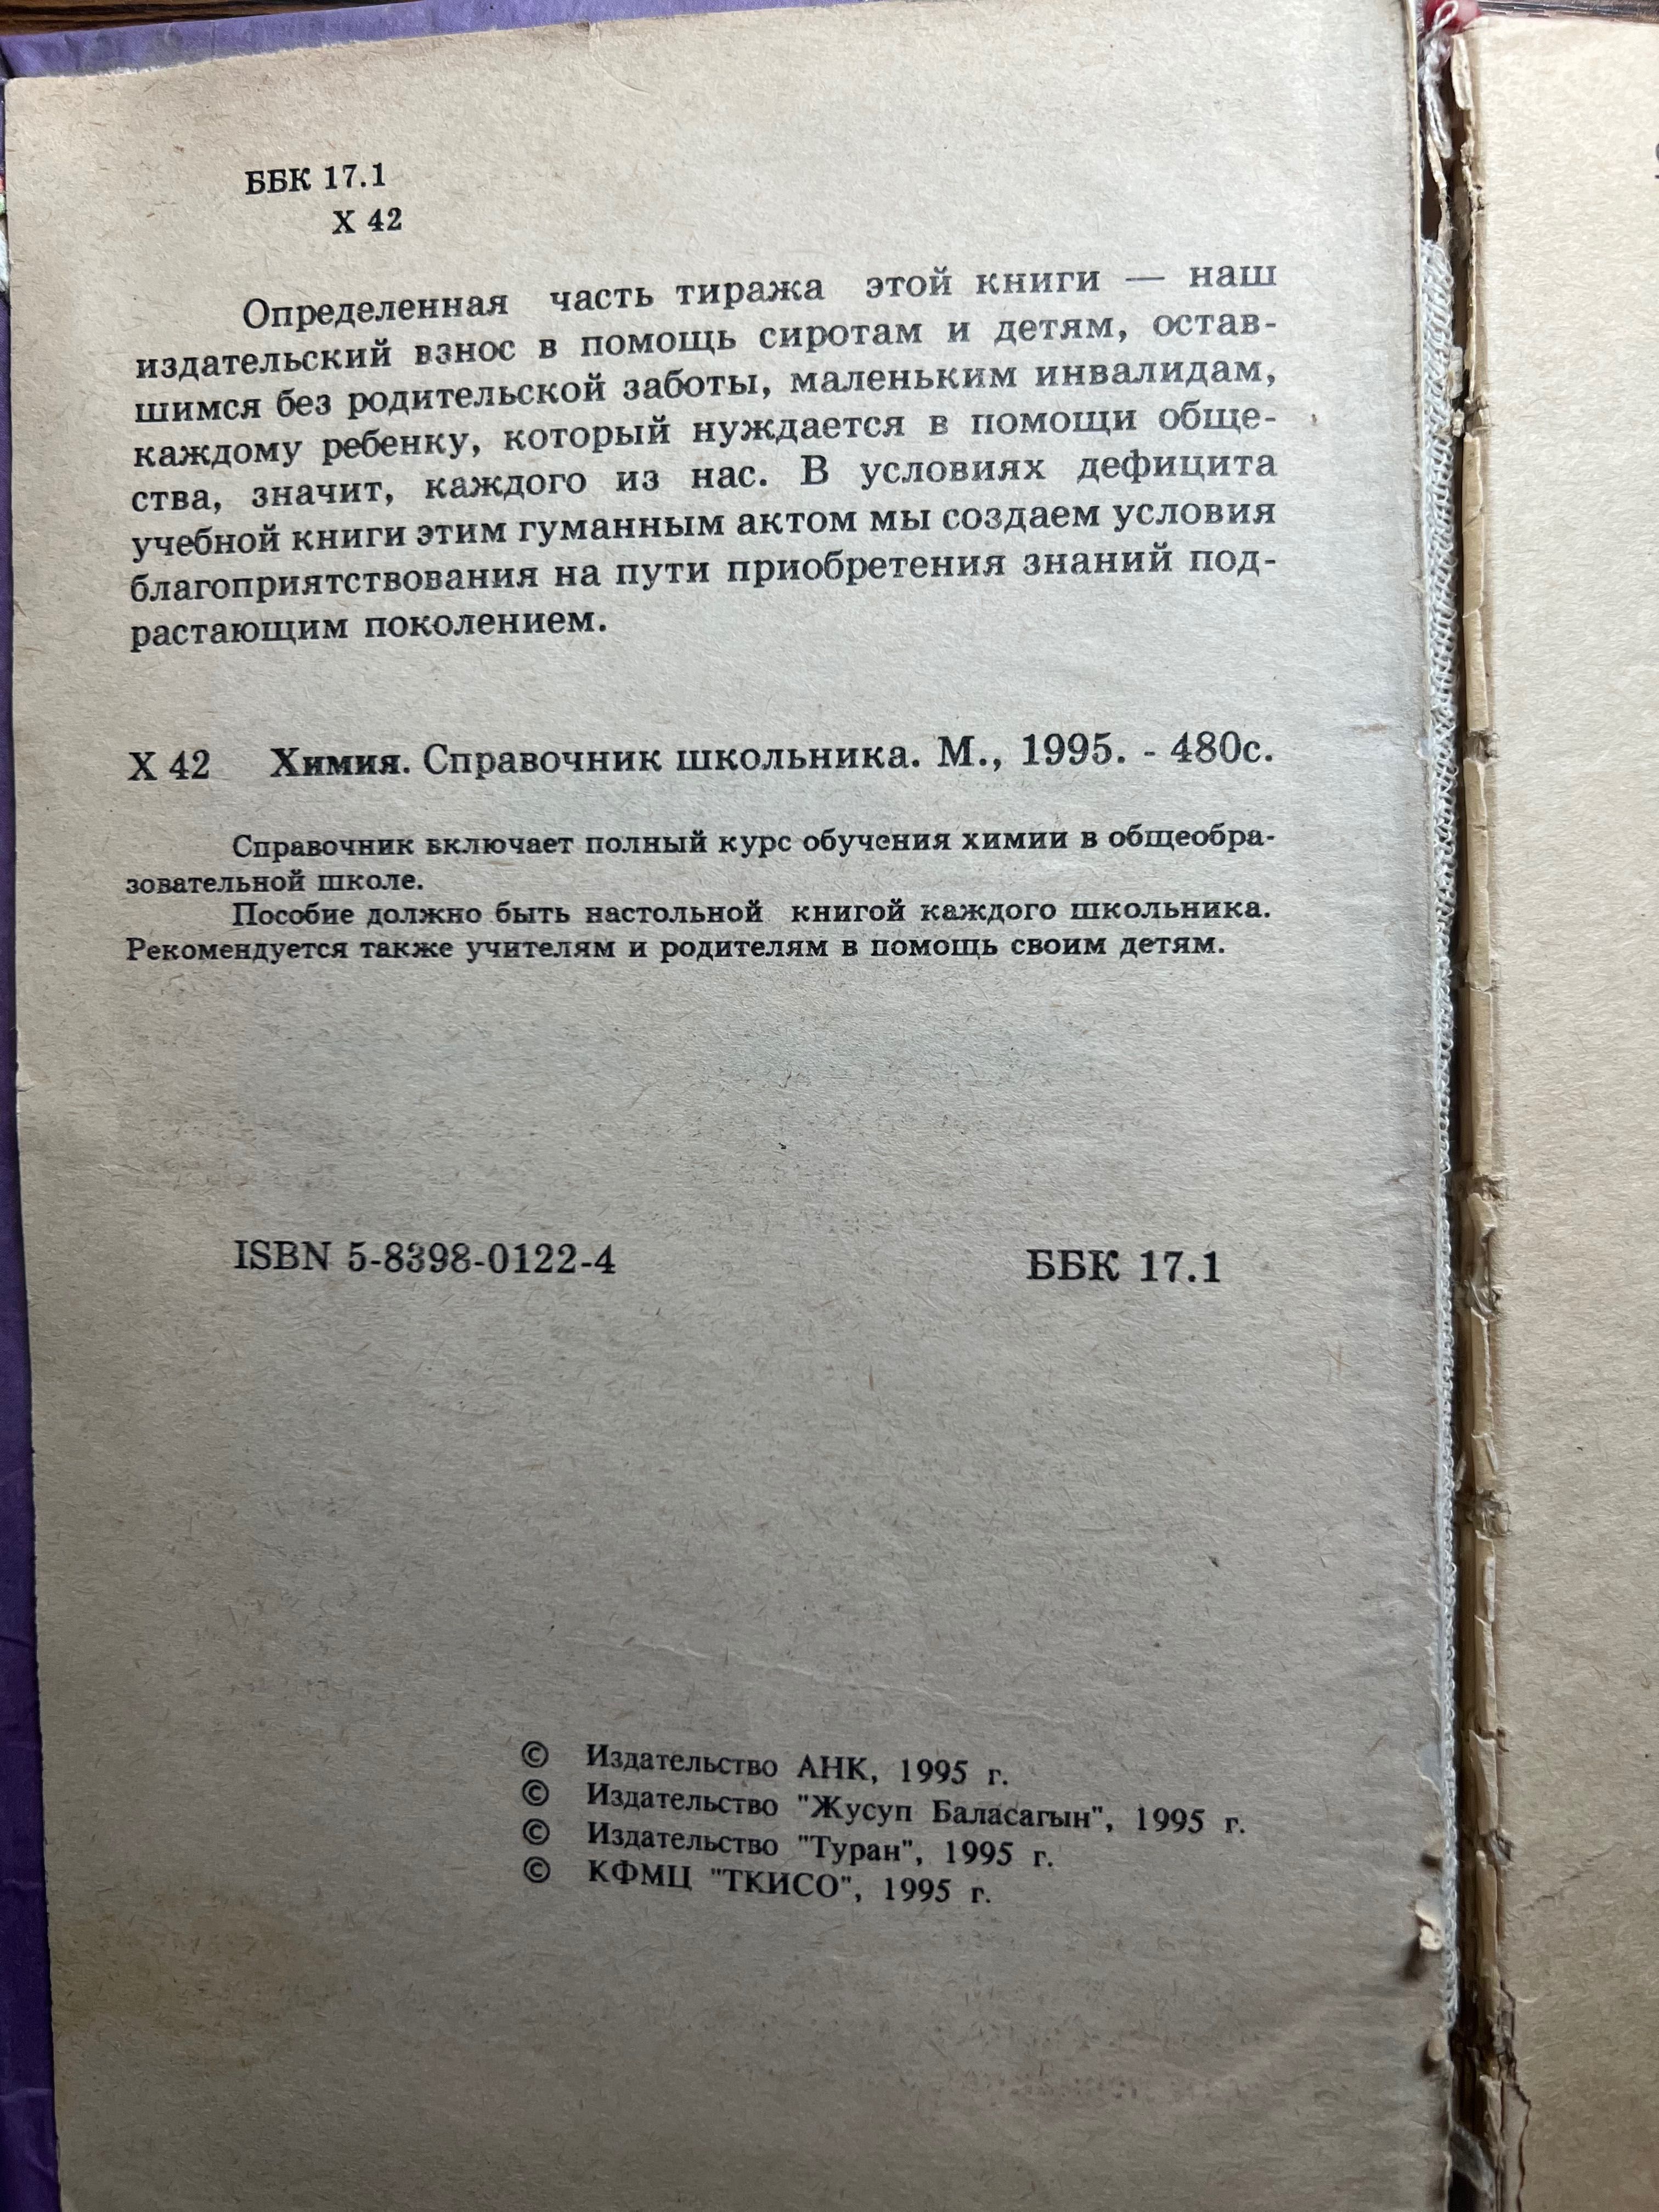 Химия справочник школьника 1995